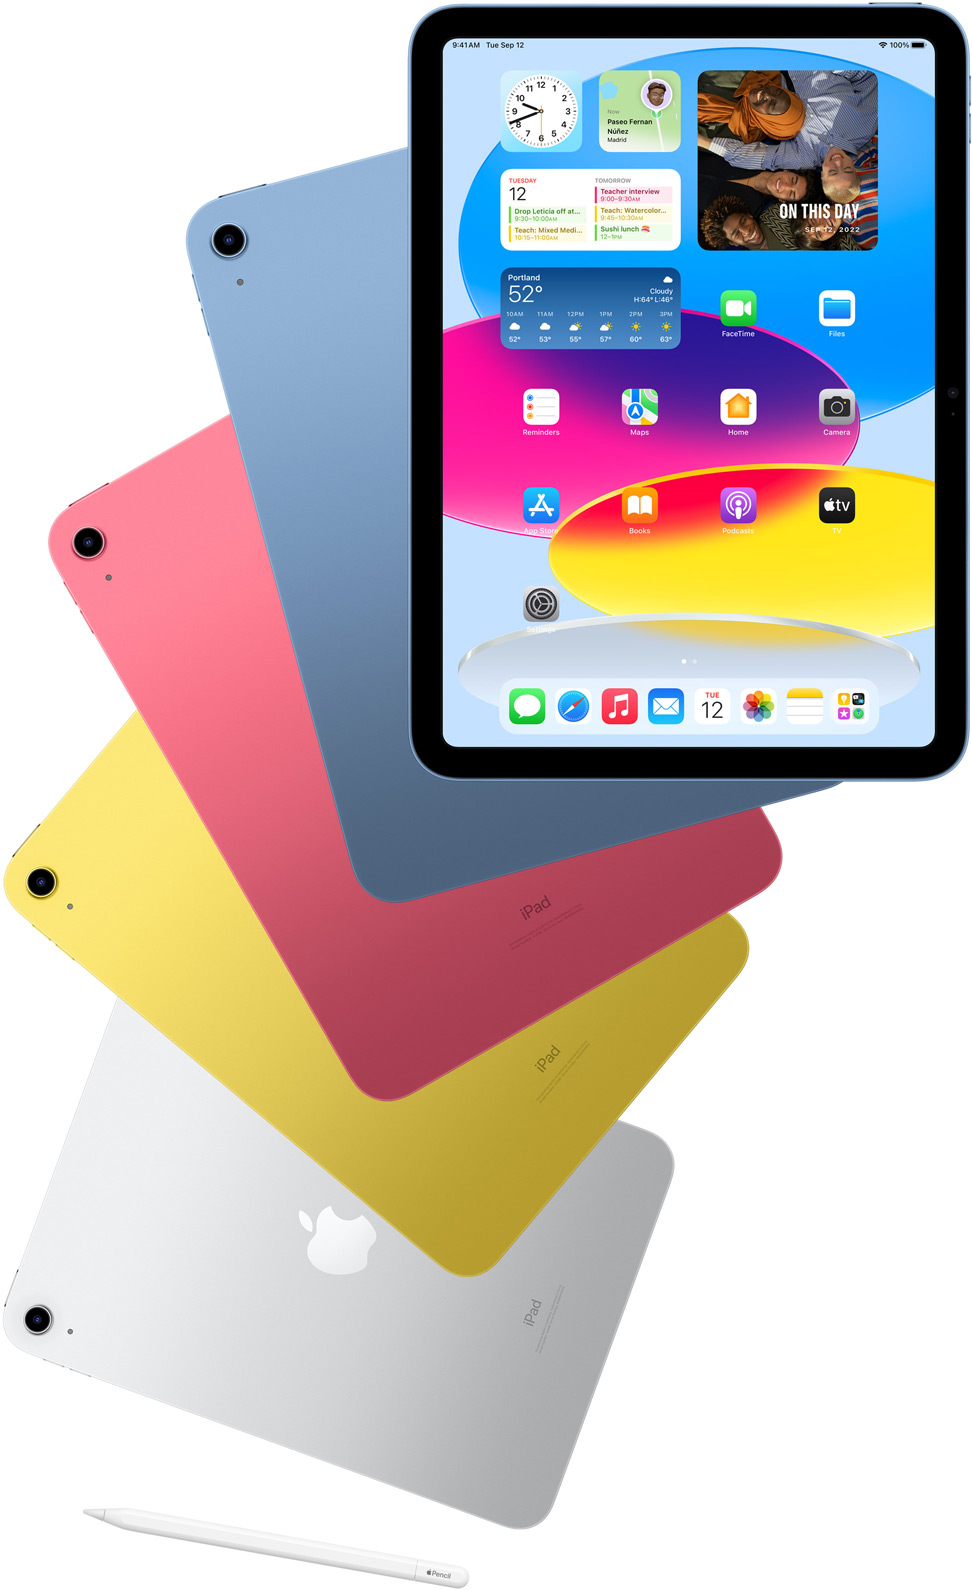 Vue avant d’un iPad affichant l’écran d’accueil, devant quatre autres iPad en bleu, rose, jaune et argent vus de dos. Un Apple Pencil est posé près des iPad disposés en éventail.